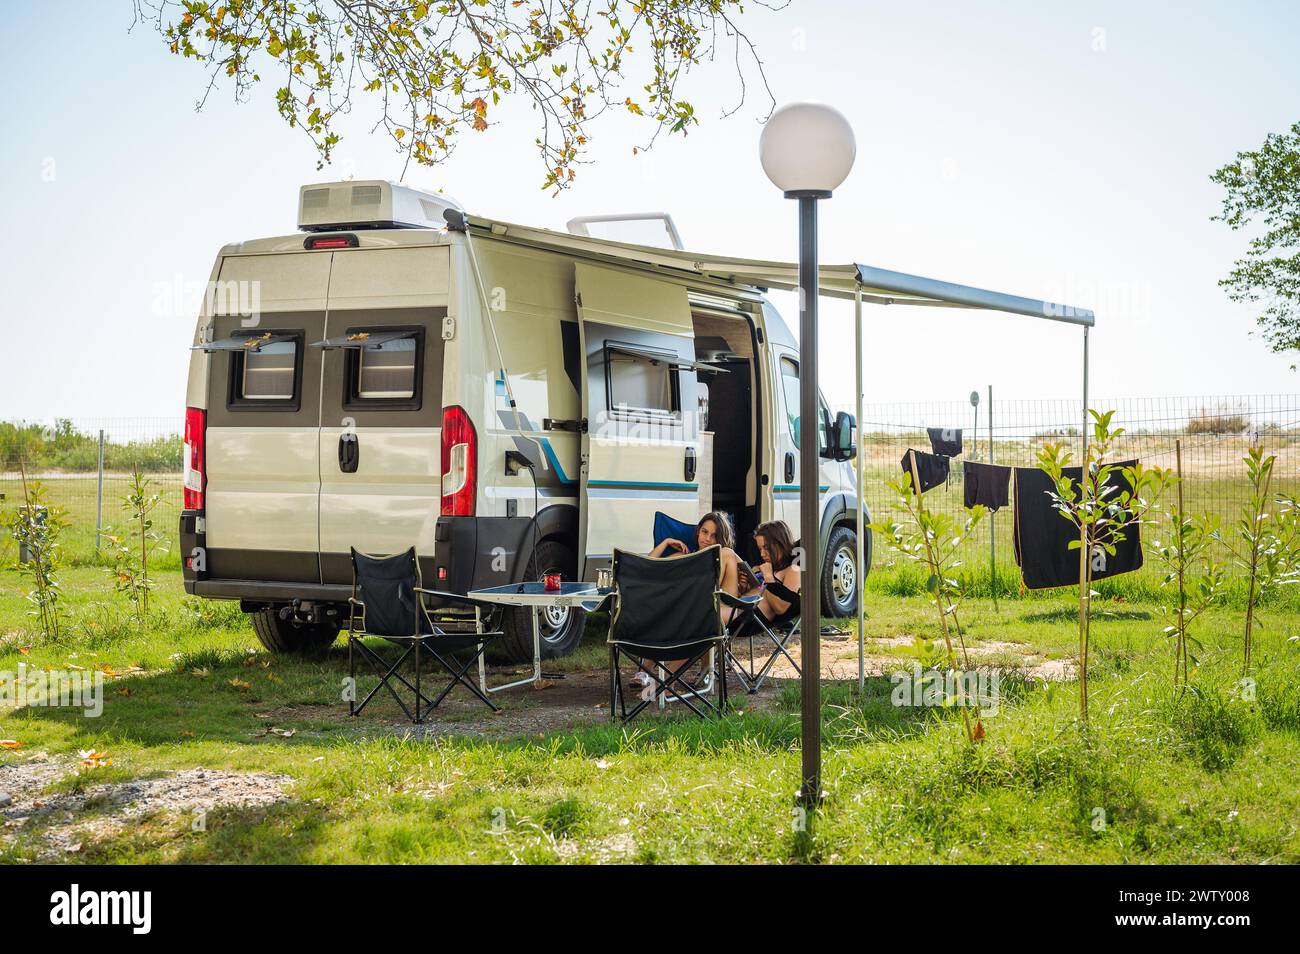 Camping familial avec camping-car dans les campings en Grèce ou en Croatie. Famille détente avec camping-car, chaises et table en vacances. Banque D'Images